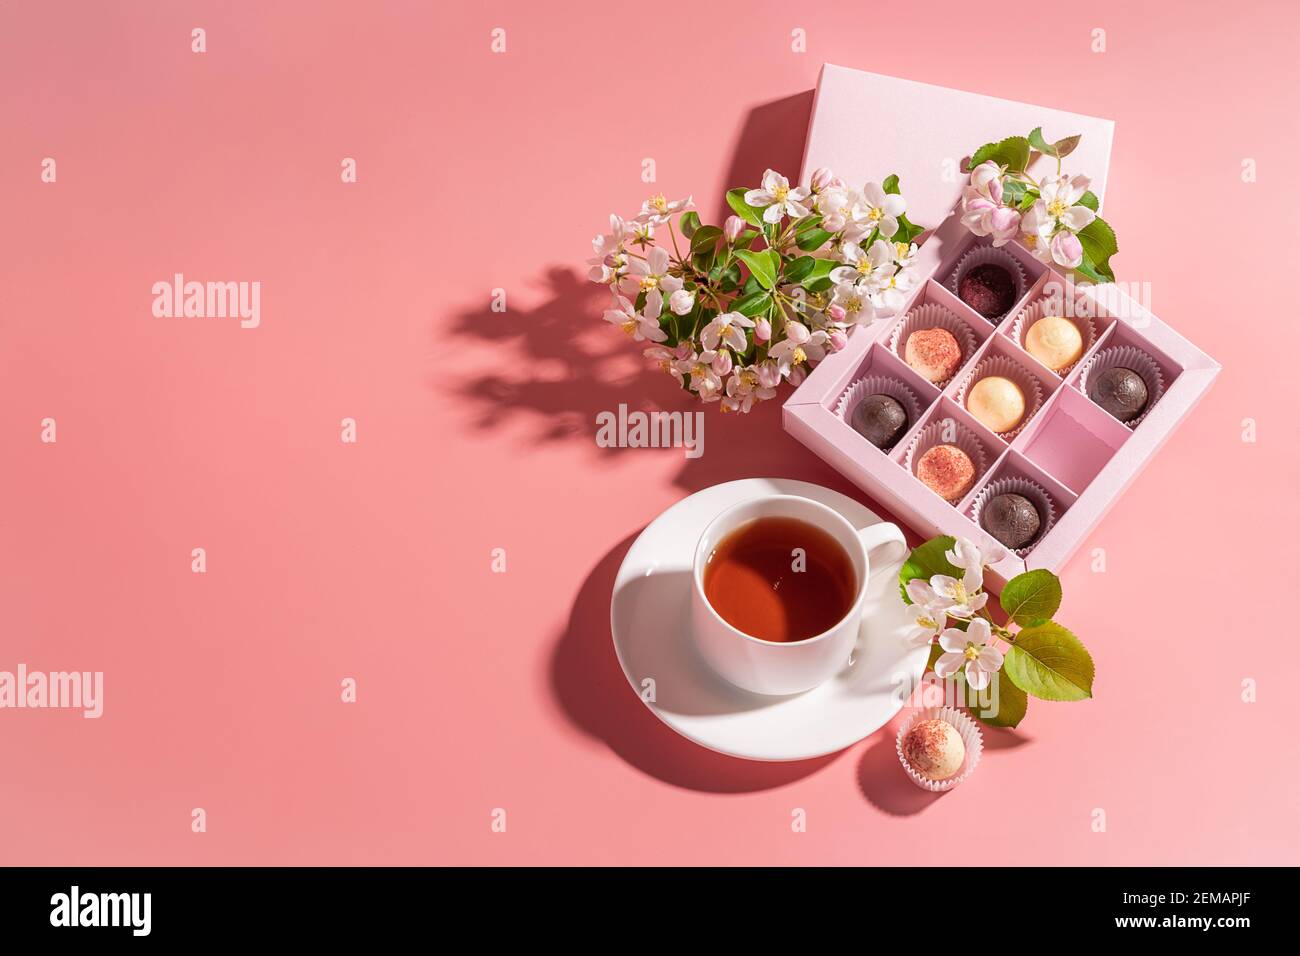 Caramelle al tartufo al cioccolato di vari colori in una elegante scatola  festosa, una tazza di tè su sfondo rosa pastello, decorata con fiori freschi.  Vacanze Foto stock - Alamy